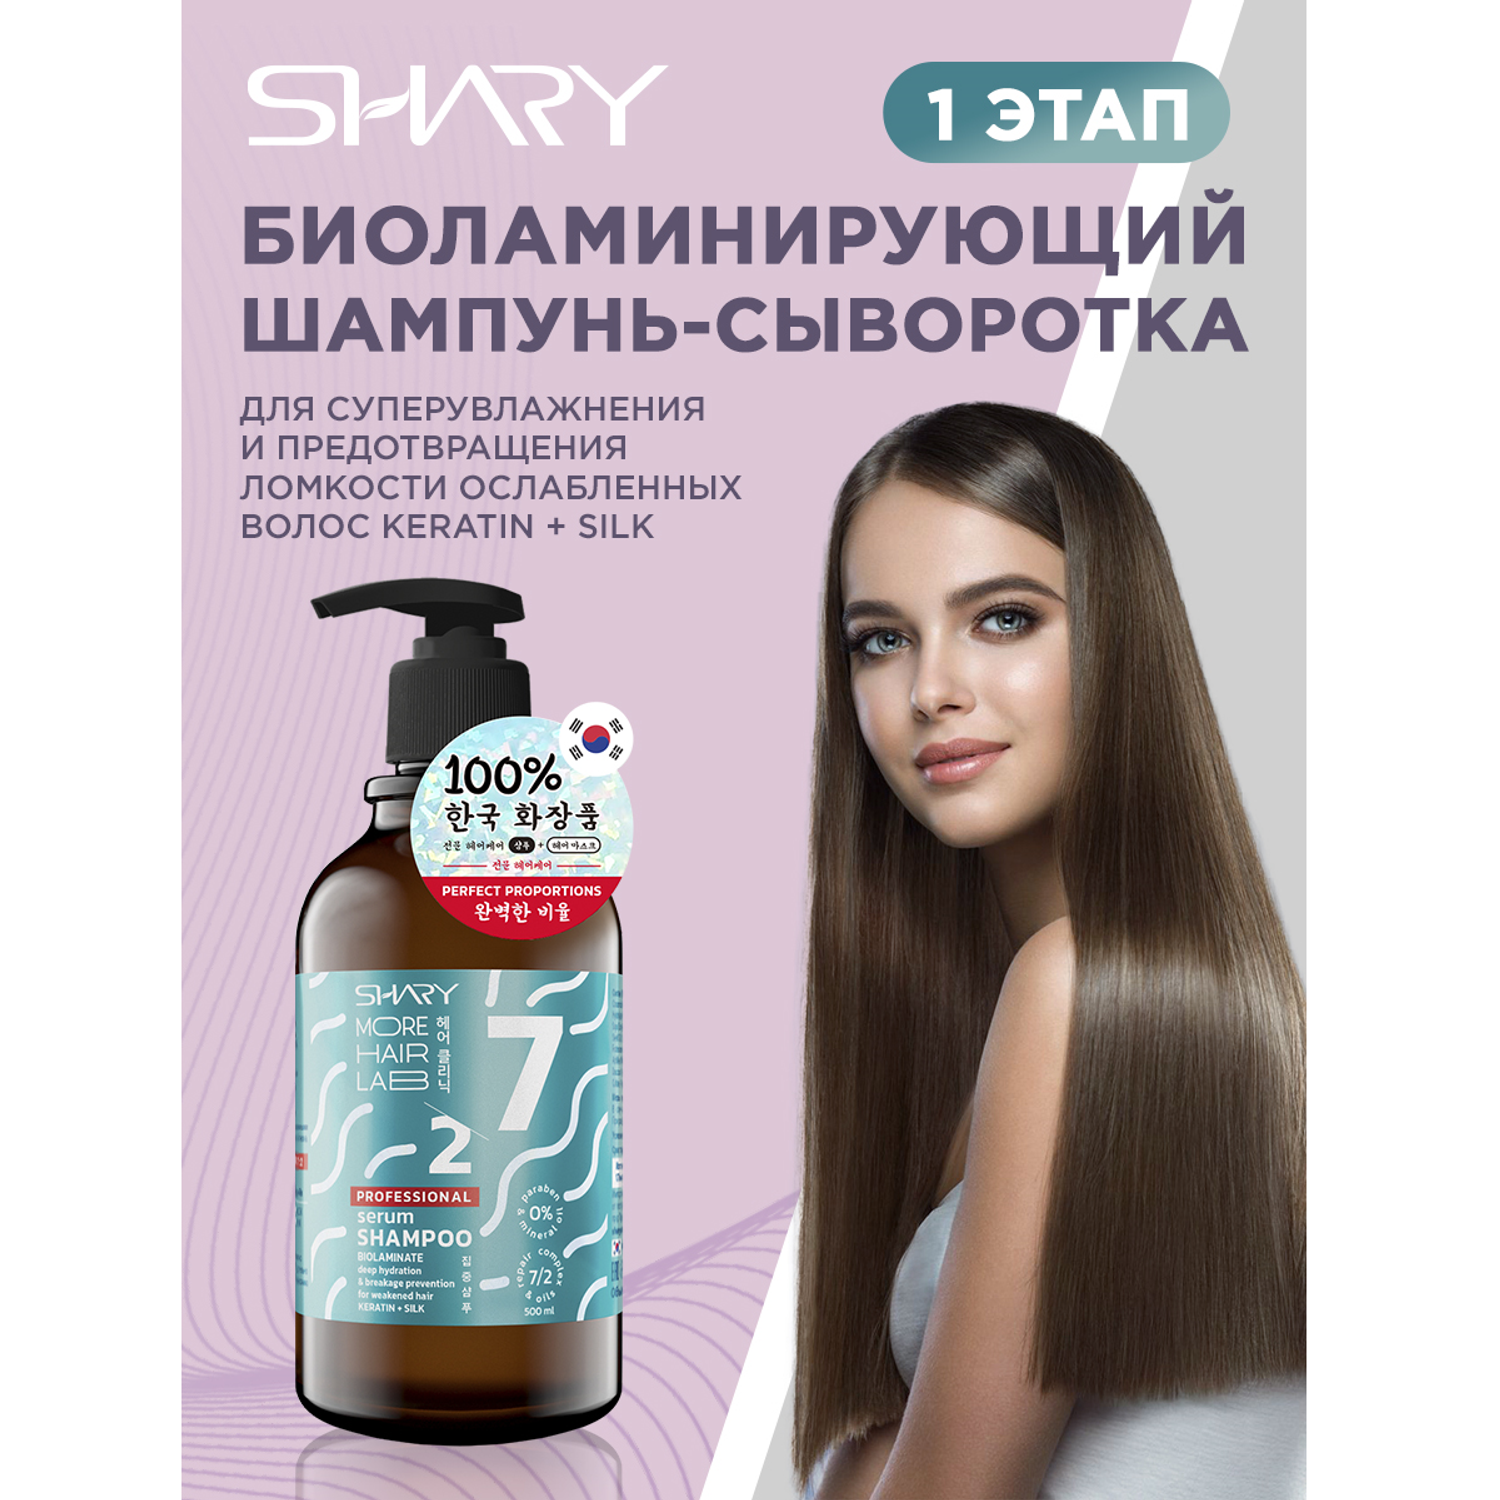 Шампунь сыворотка SHARY Биоламинирующий для увлажнения и против ломкости волос Keratin Silk 500 мл - фото 1